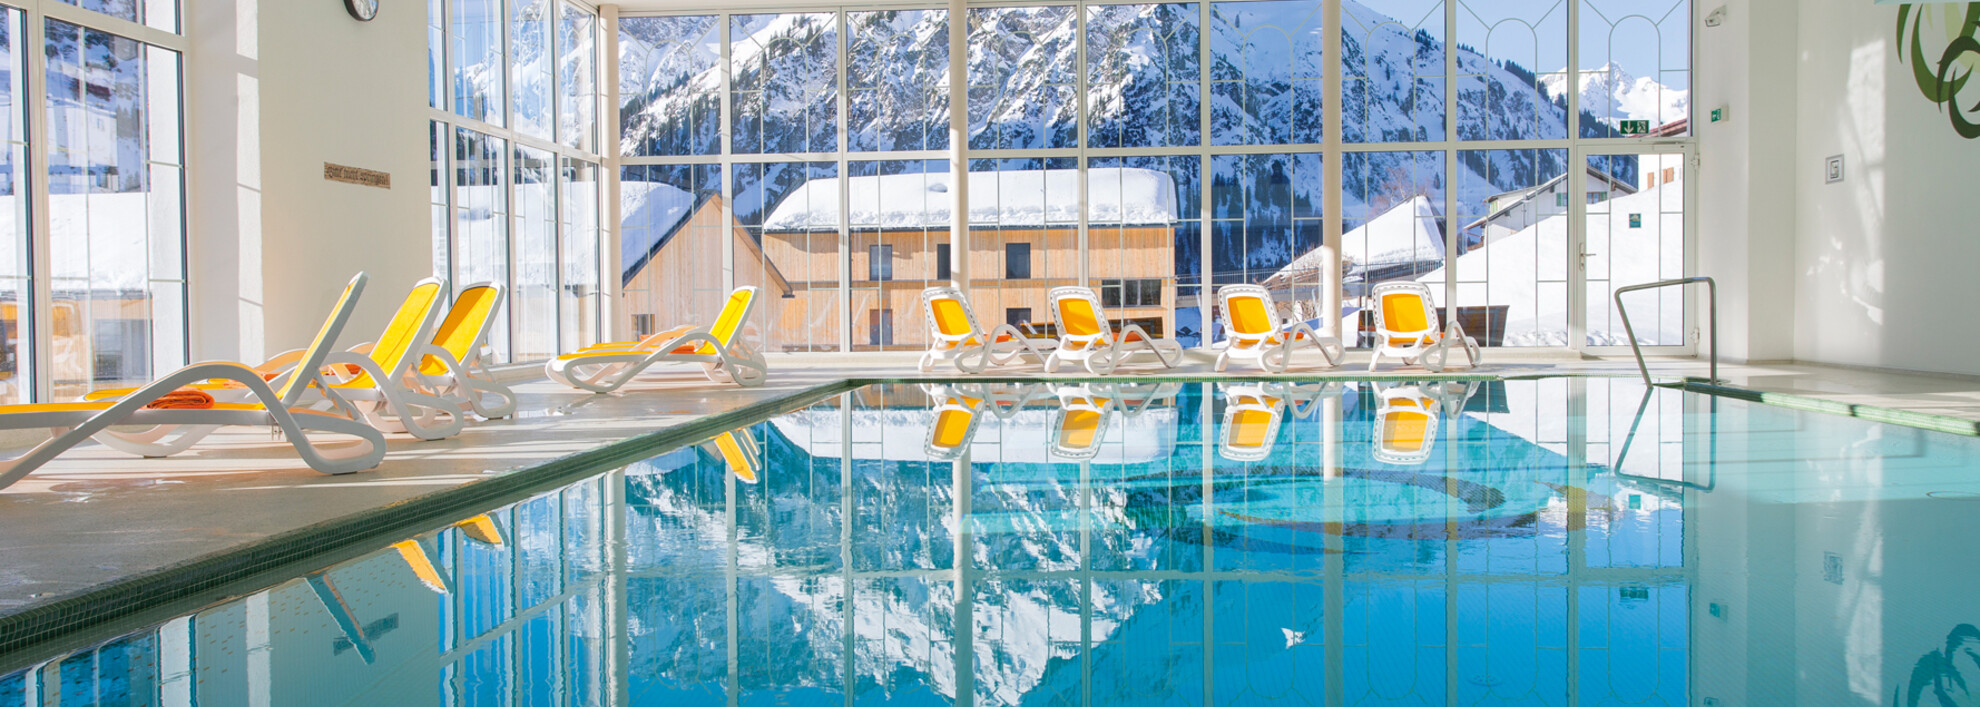 Schwimmbad im Hotel Alte Krone | © Alte Krone